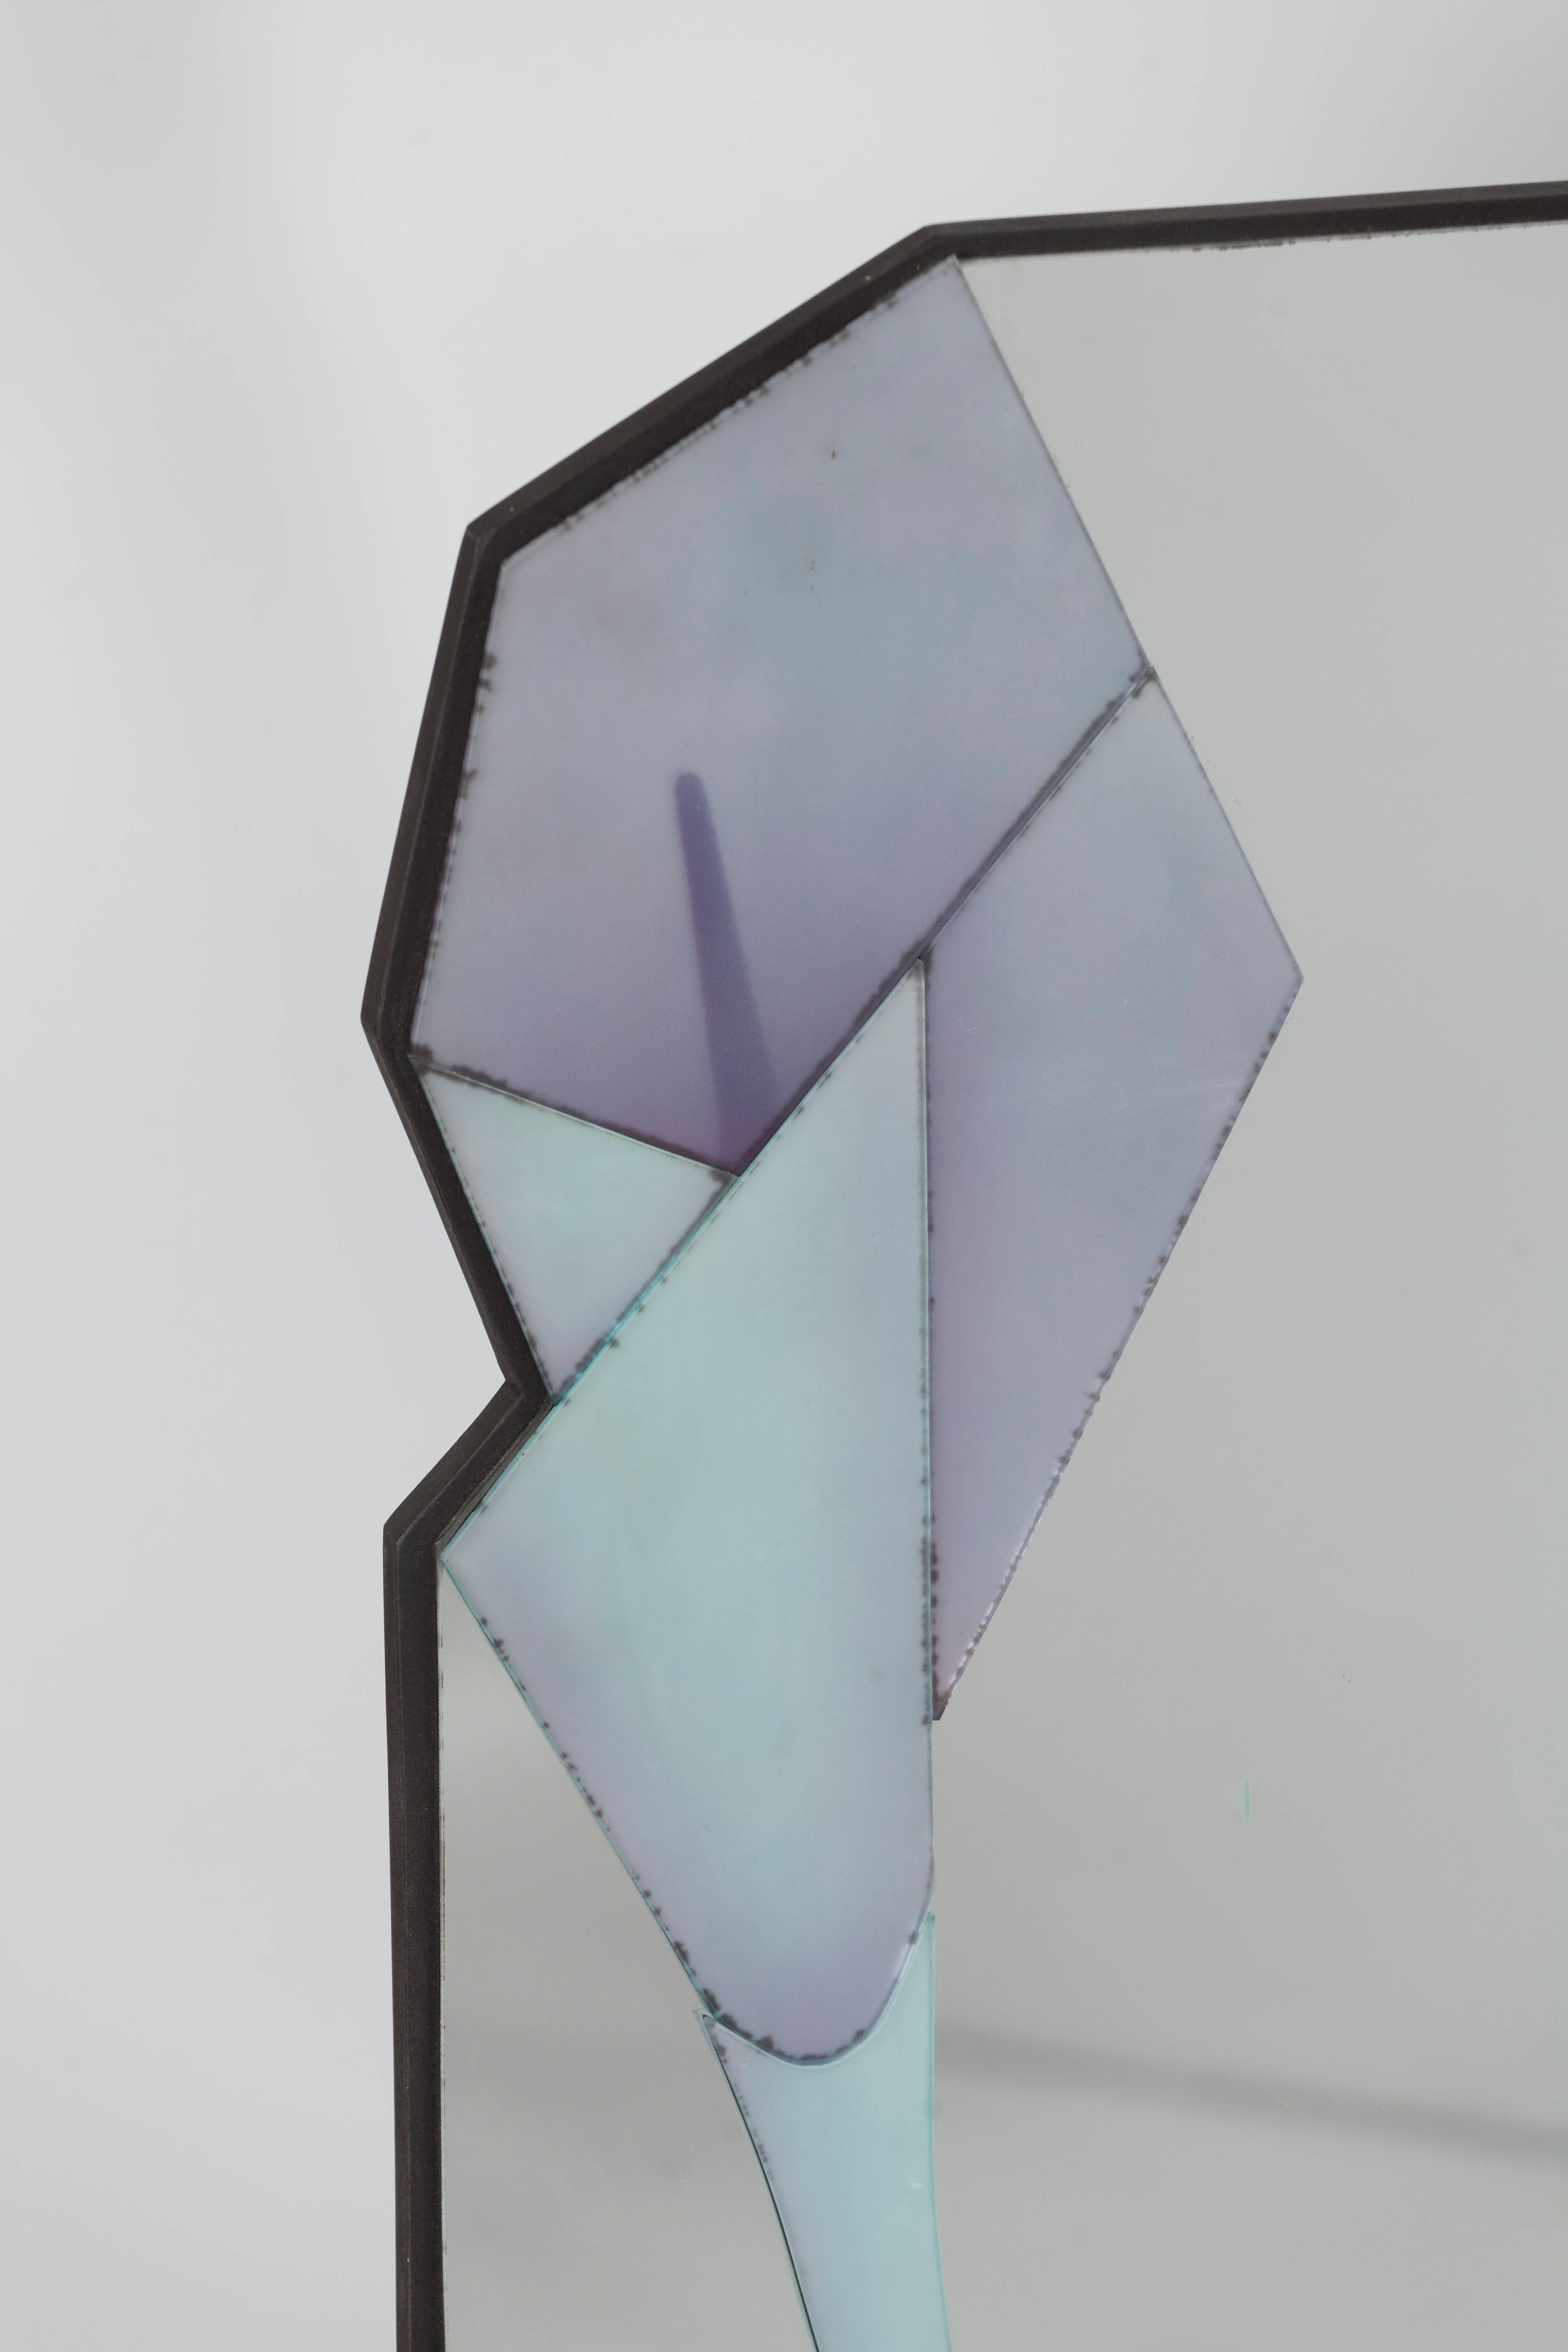 Miroir mural asymétrique avec plusieurs couches différentes créé par David Marshall.
David Marshall conçoit et fabrique des accessoires de meubles depuis 1972, en se spécialisant dans les miroirs sculptés et colorés à la main. Tous les miroirs sont